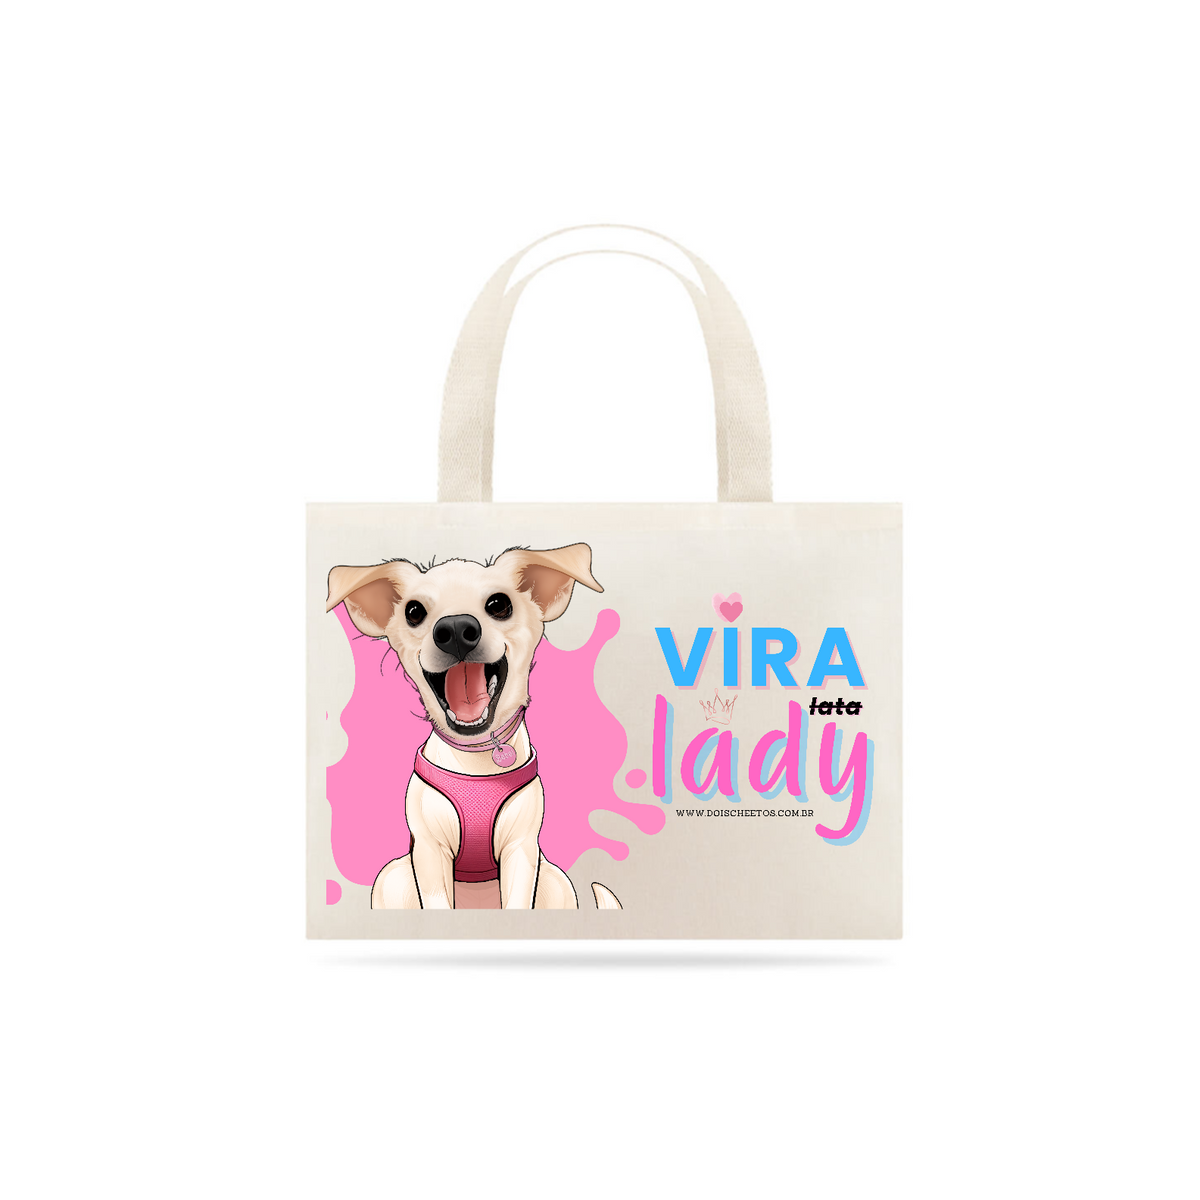 Nome do produto: Vira-Lady [Ecobag]